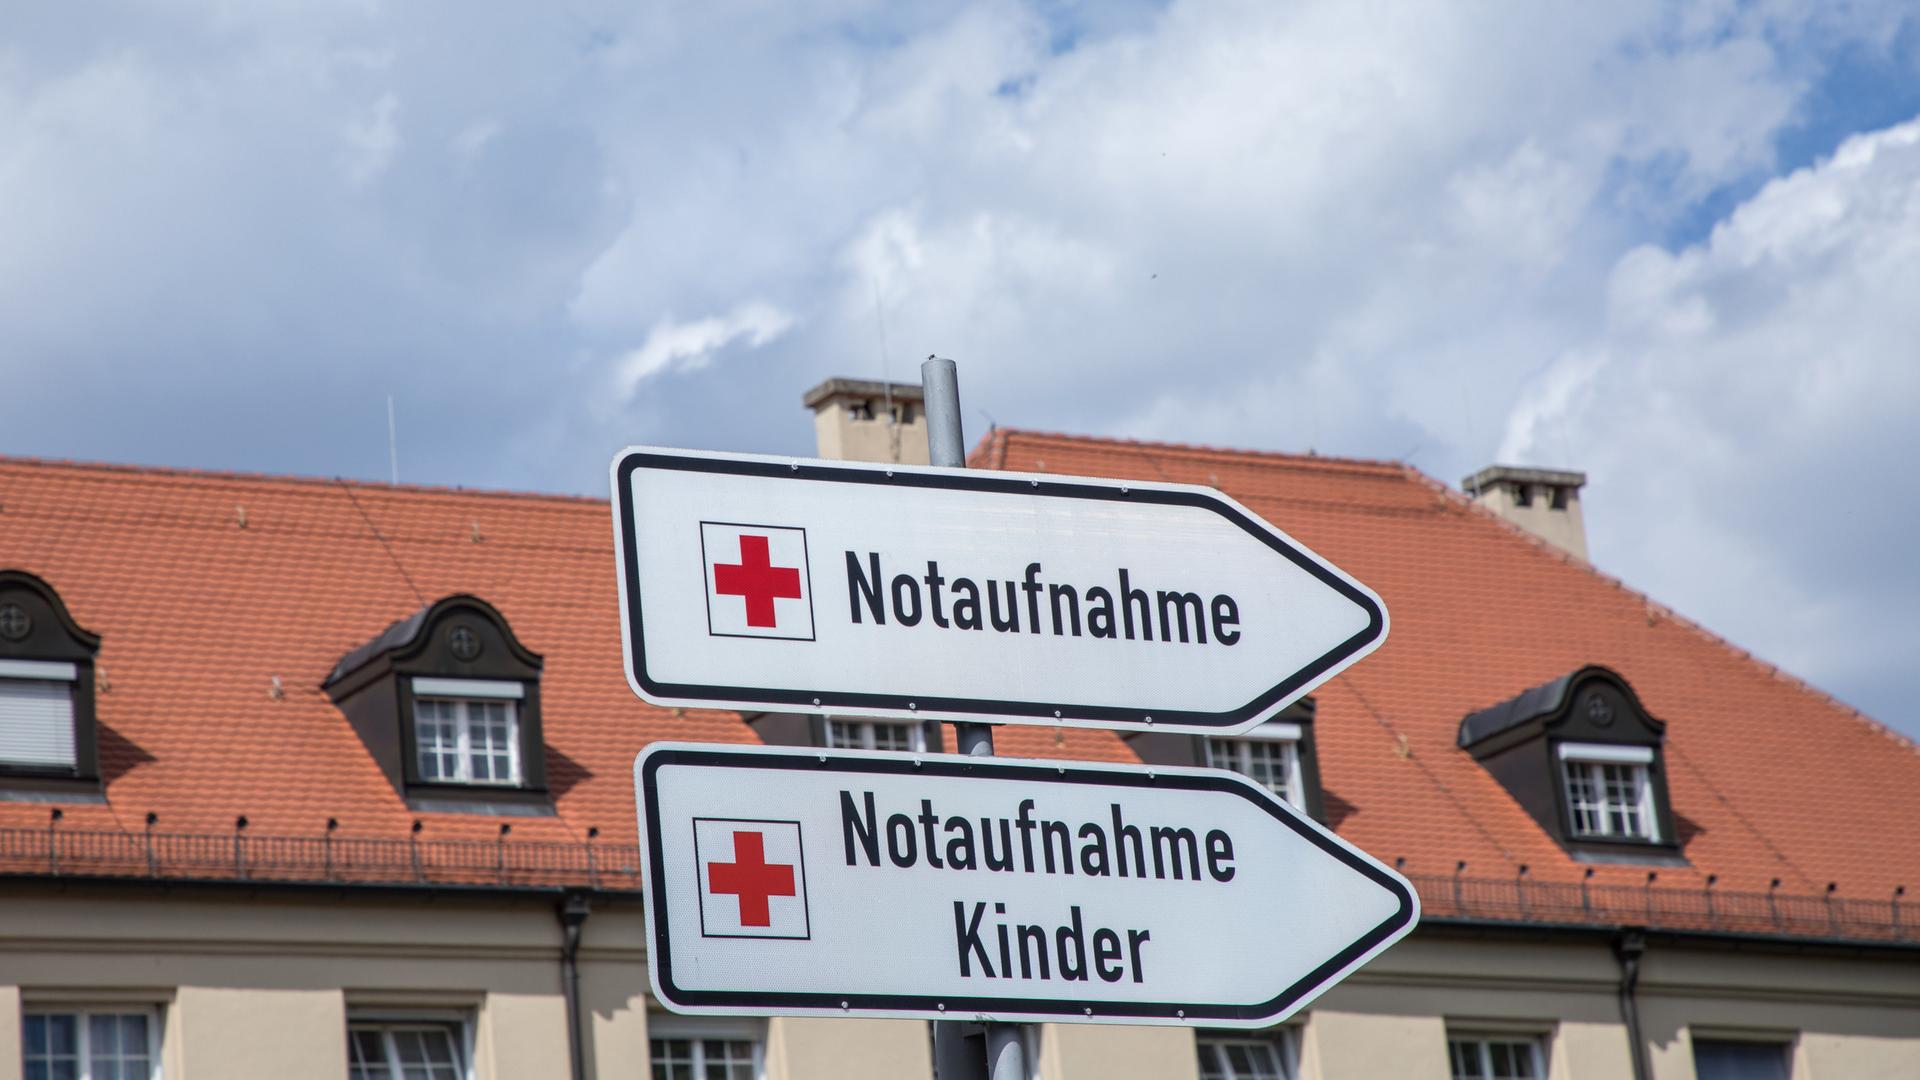 Blick auf die Klinik Schwabing in München mit Hinweistafeln zur Notaufnahme und Notaufnahme für Kinder